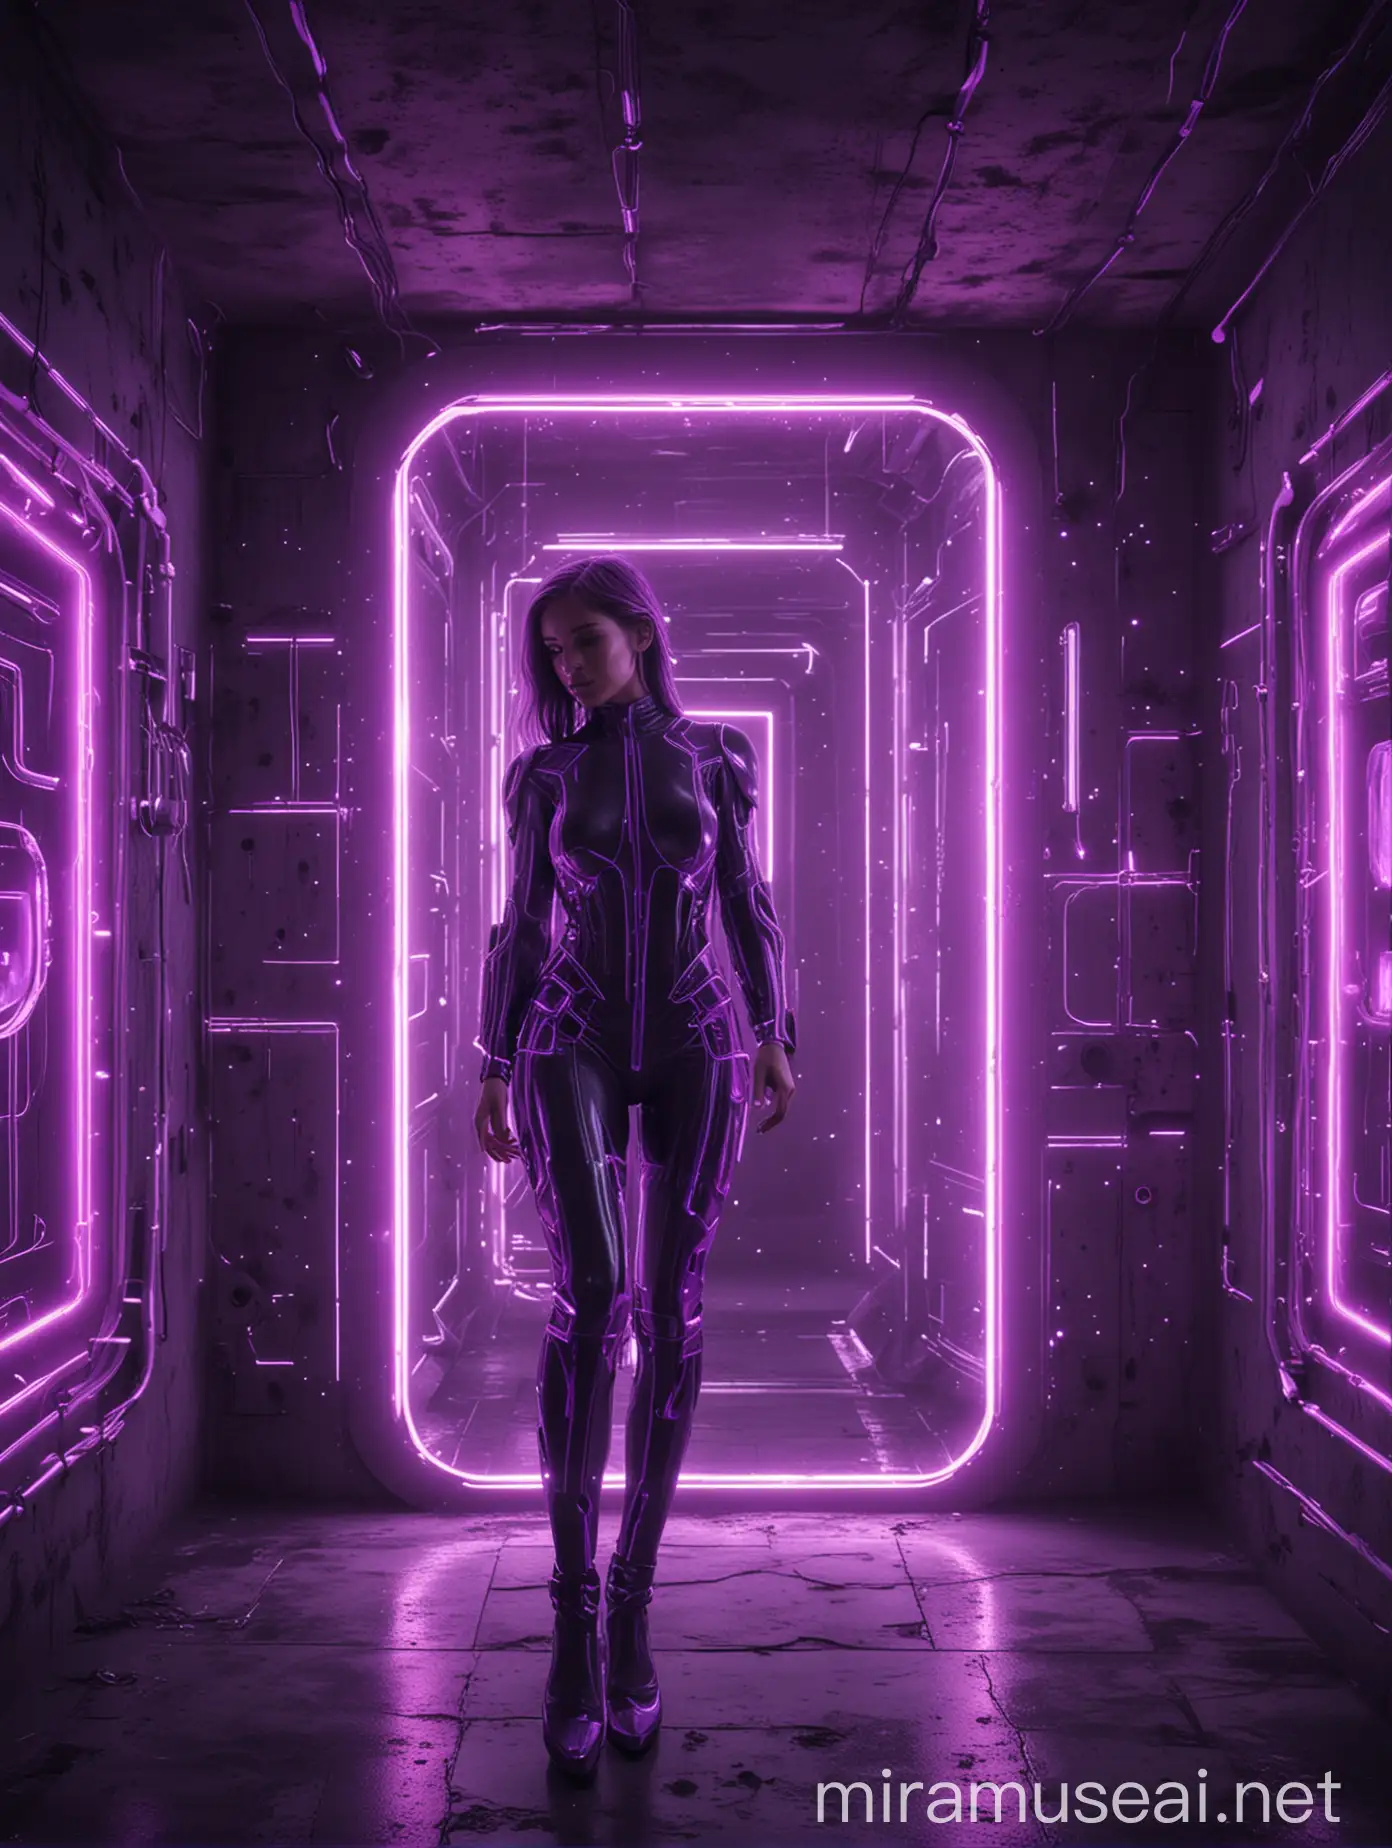 Futuristic Neon Technology in Vibrant Purple Hue